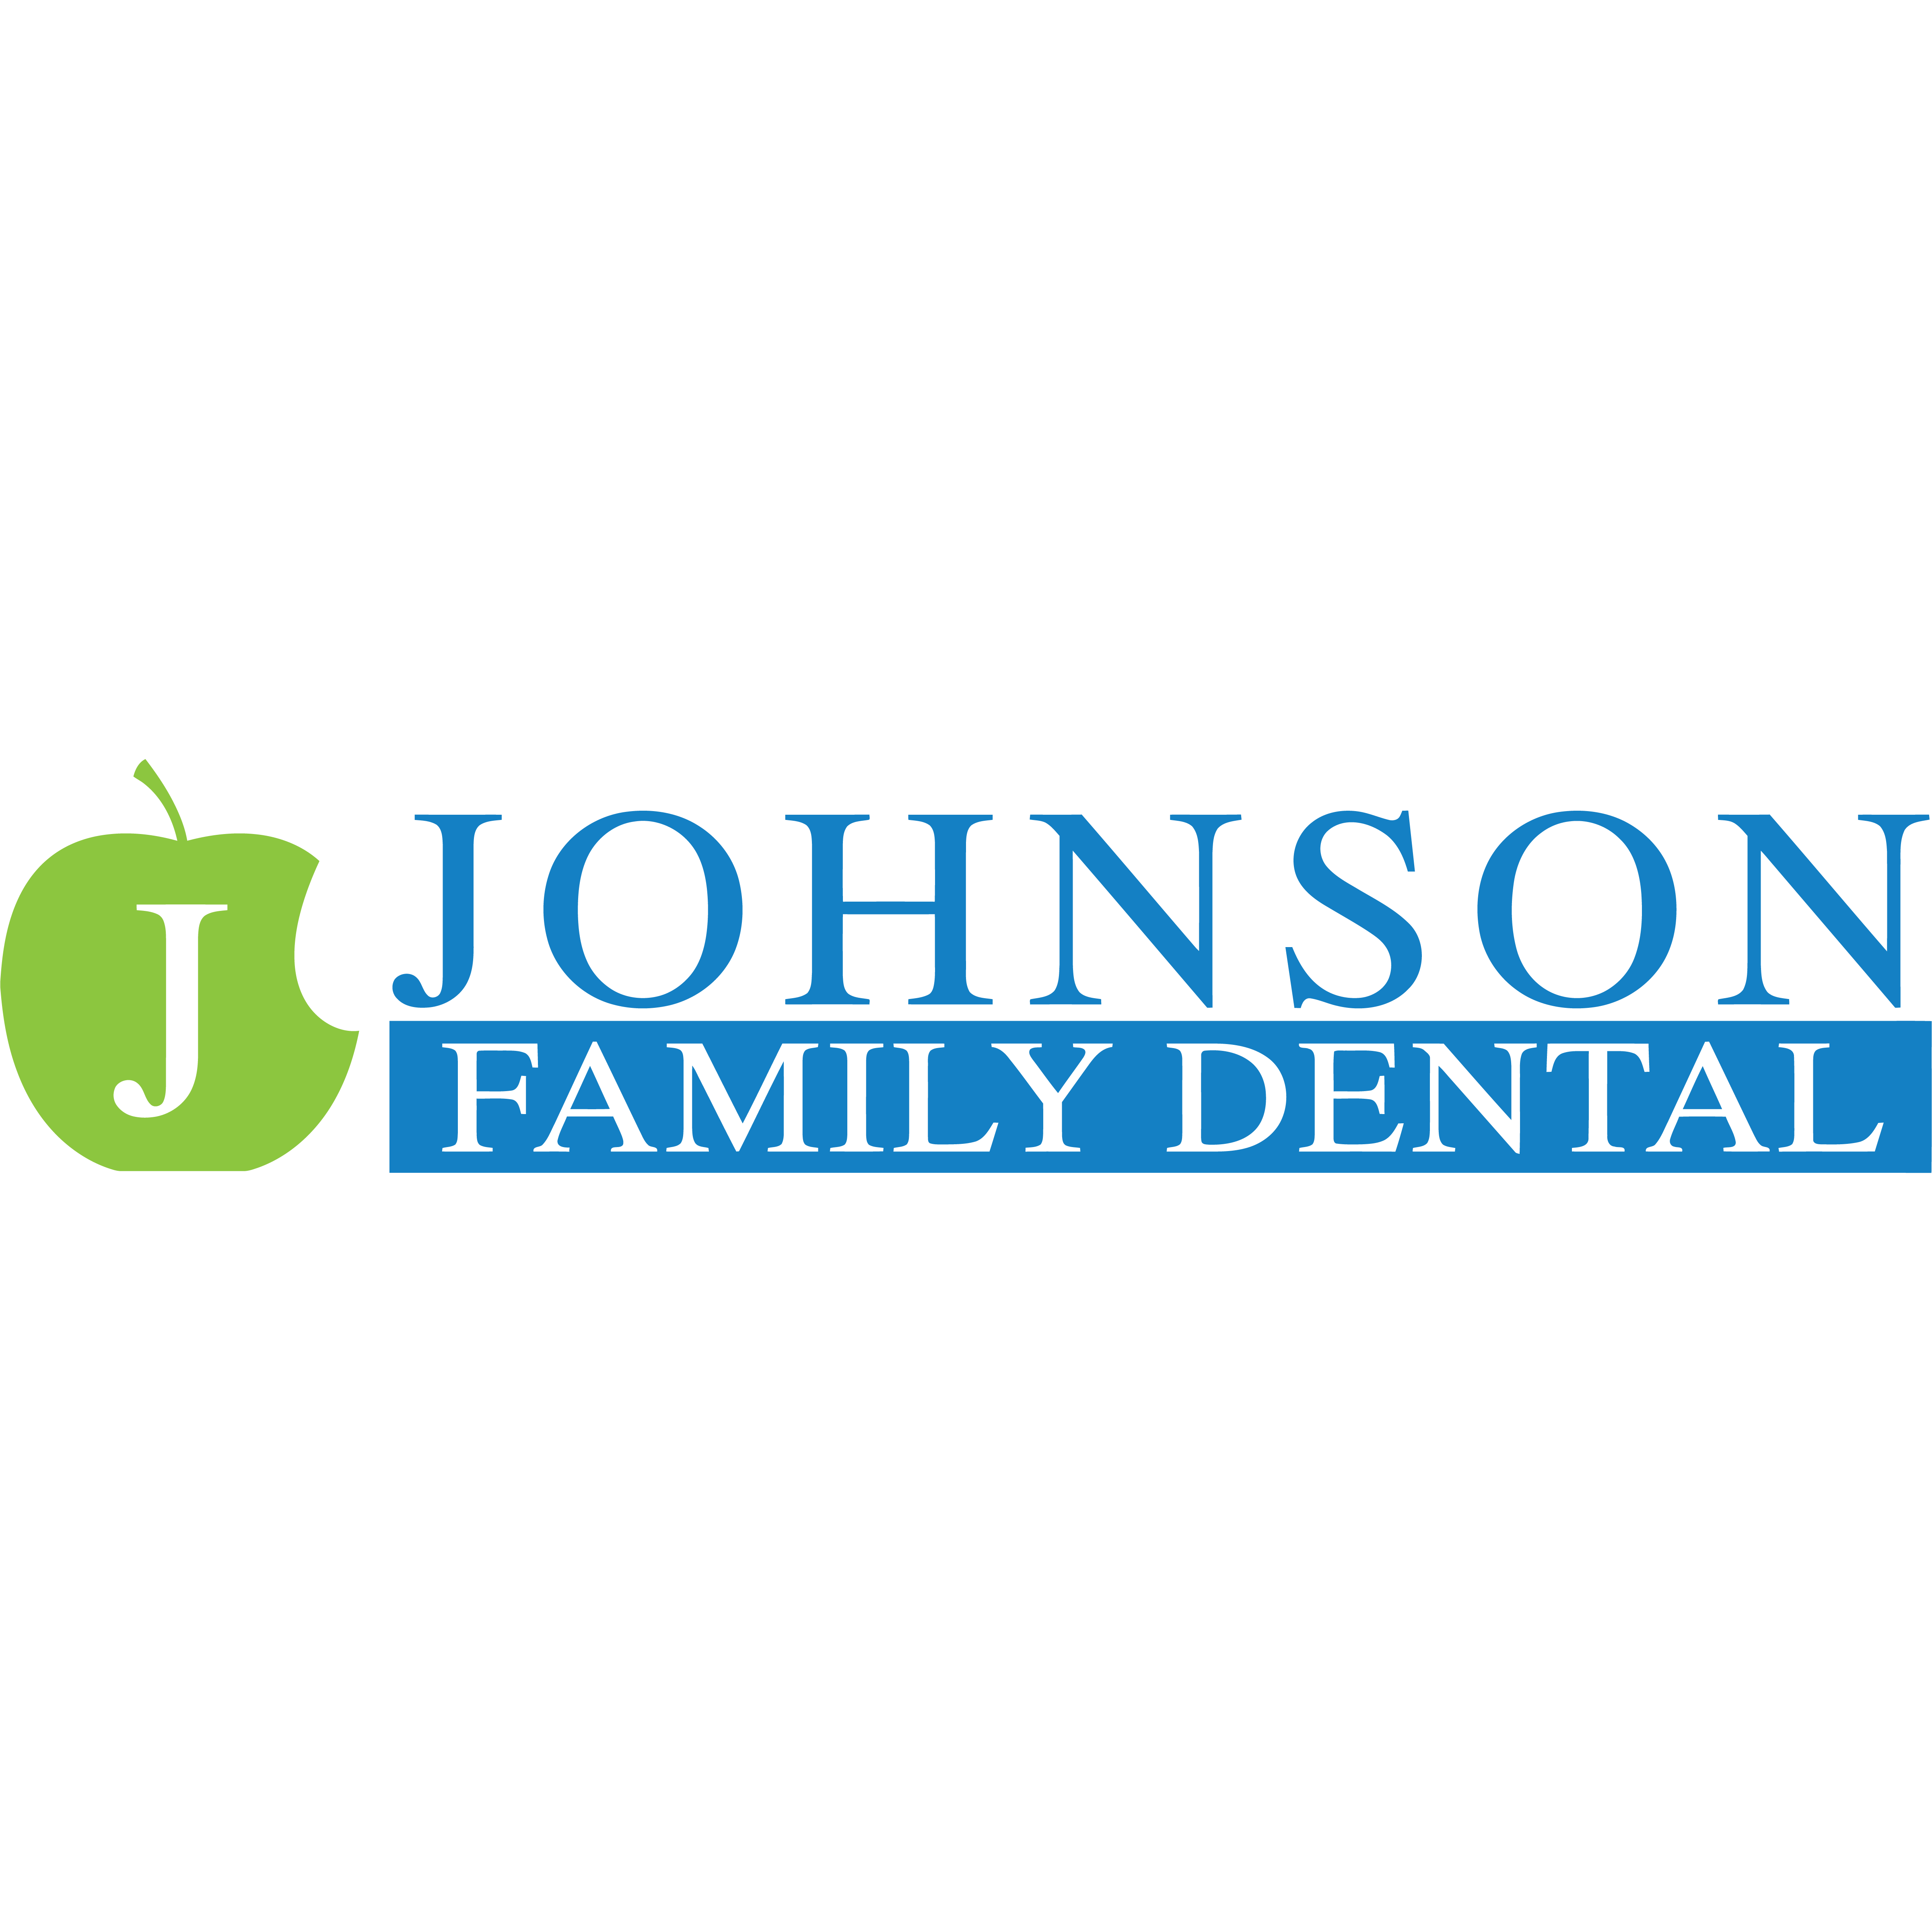 Johnson Family Dental - Santa Barbara